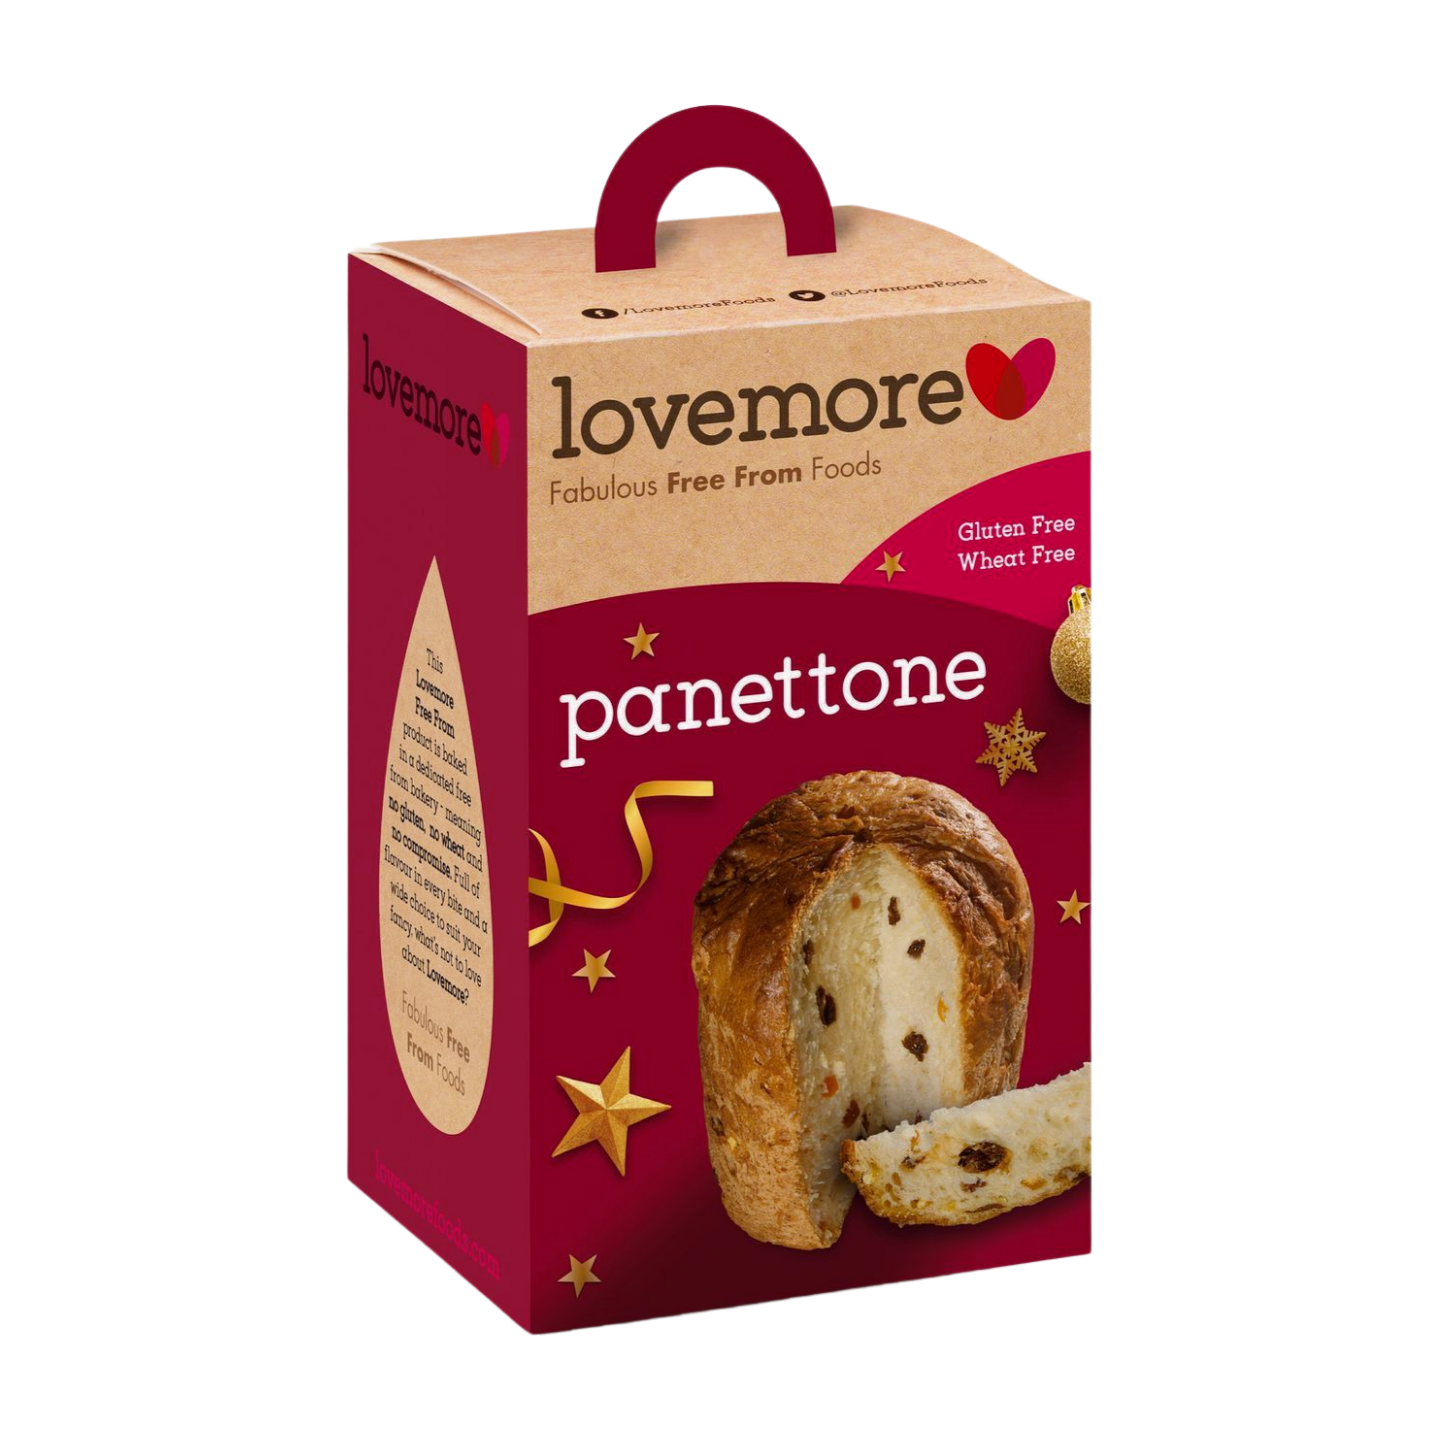 Lovemore Gluten Free Panettone (240g)